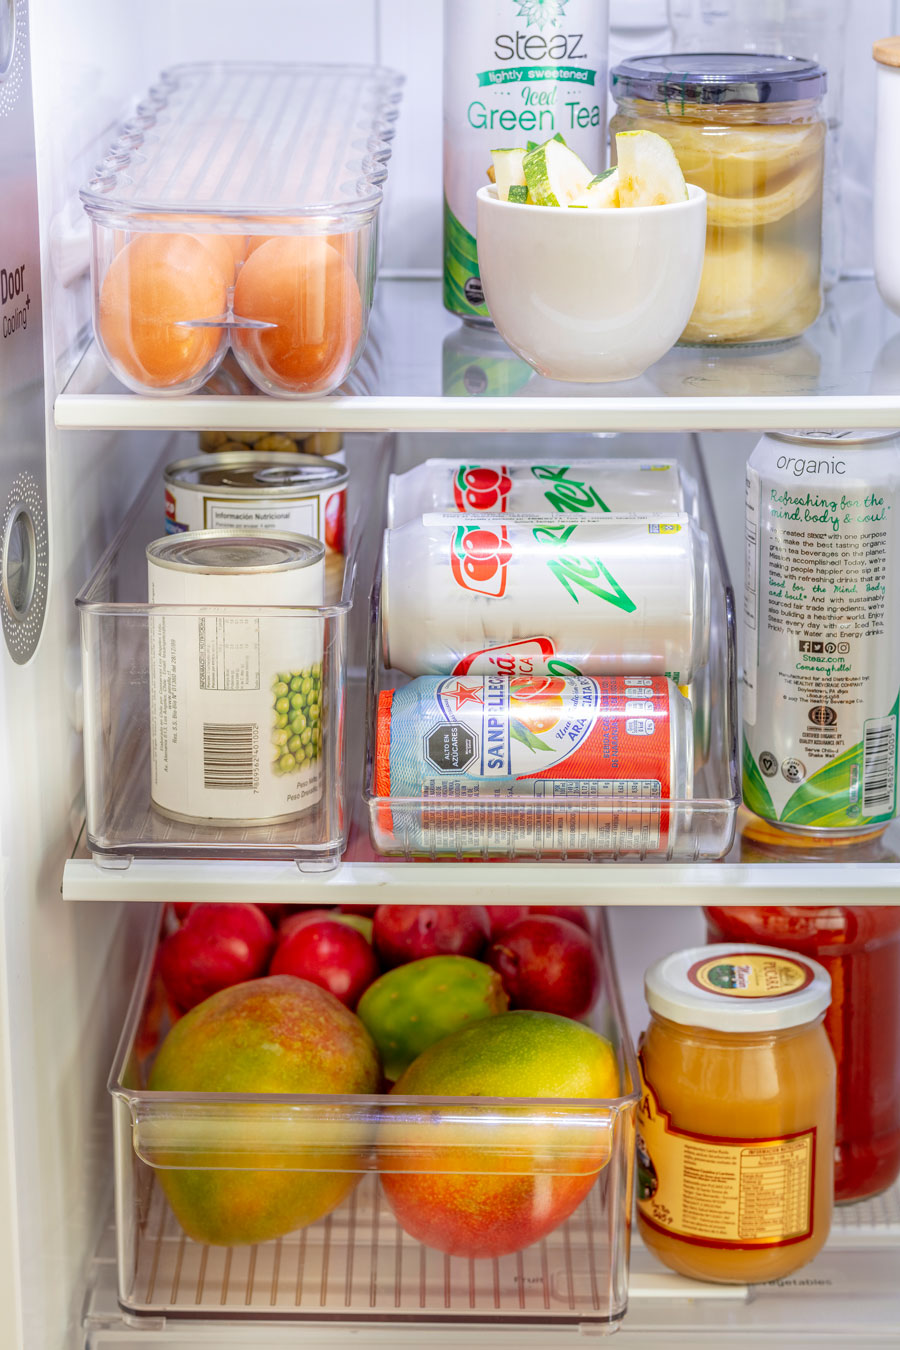 Cajas organizadoras plásticas transparentes dentro de un refrigerador. En su interior hay diferentes alimentos, tales como: huevos, latas de conserva, latas de bebidas y frutas.